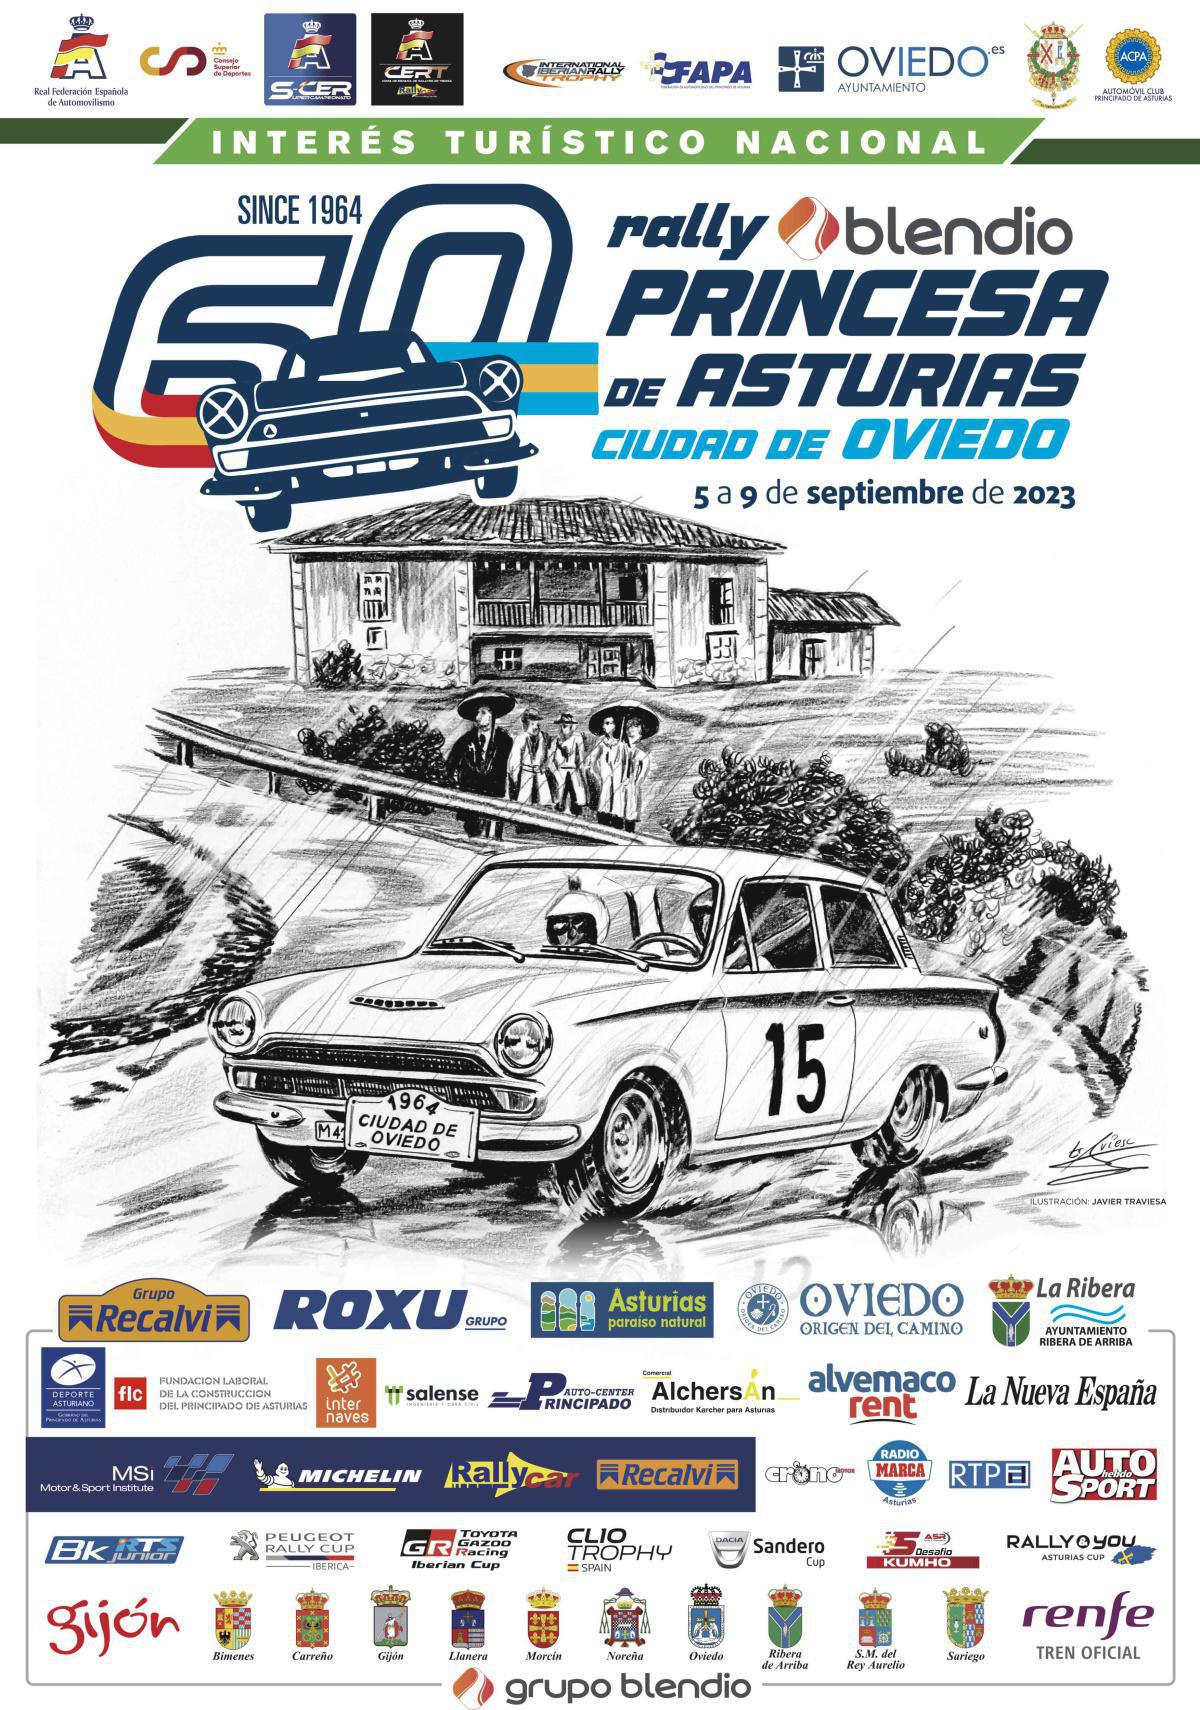 Comienza la 60 edición del Rallye Blendio Princesa de Asturias Ciudad de Oviedo